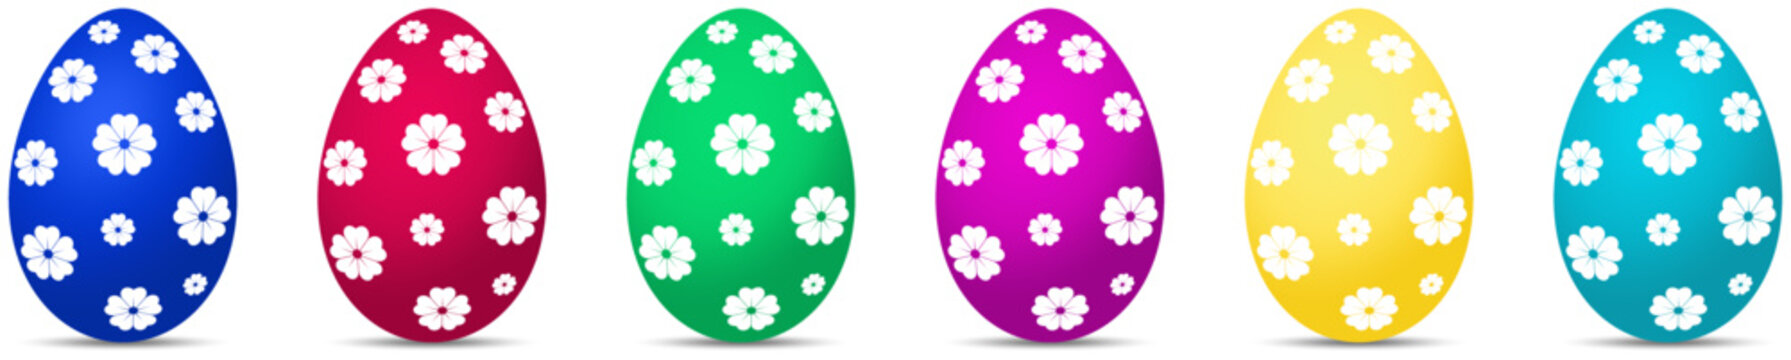 Osterei Vektor Kollektion. Bunte Eier mit Blumen Muster auf einem weißen isolierten Hintergrund.